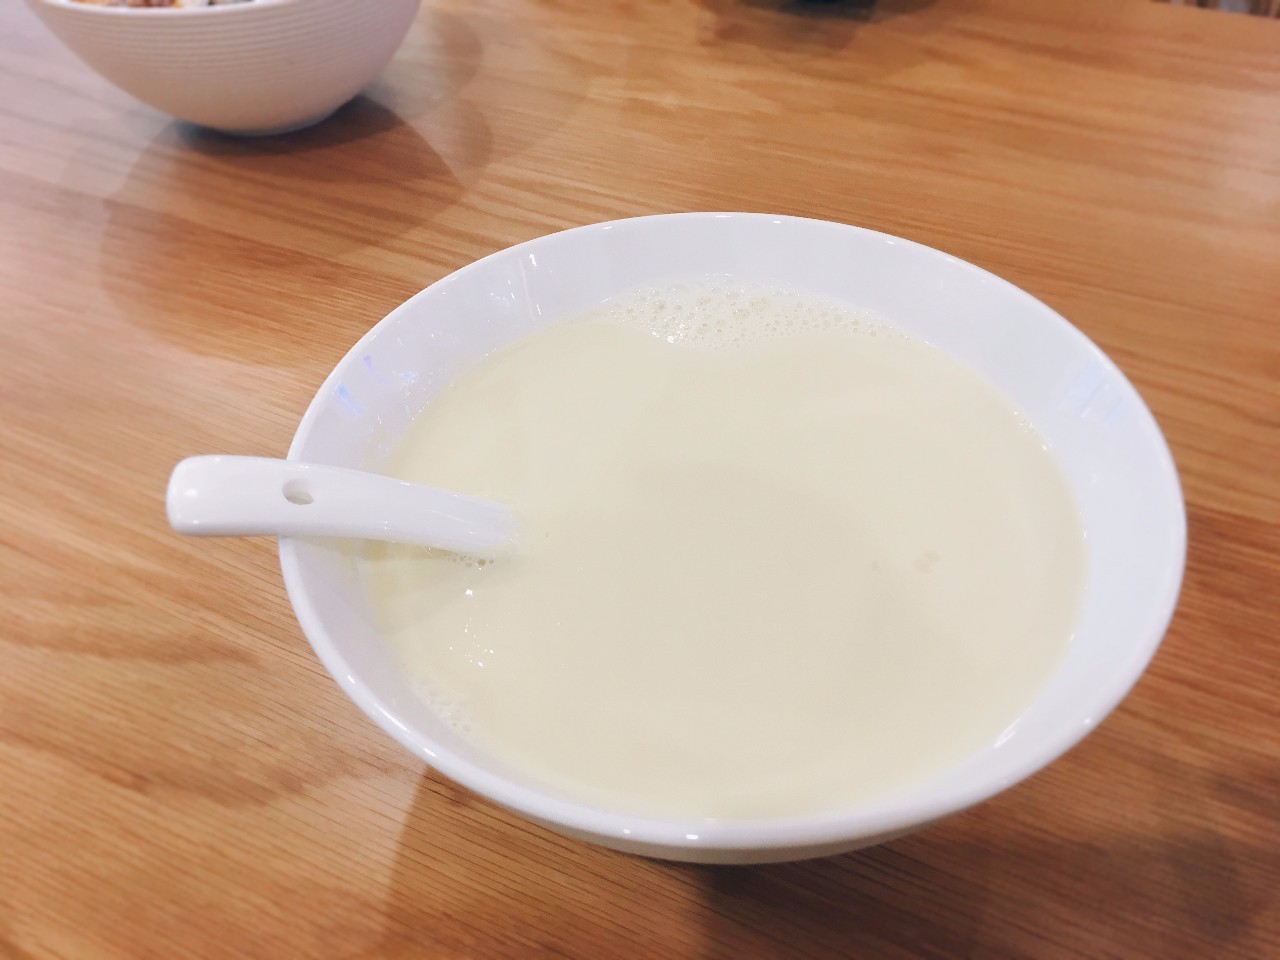 每杯豆浆都要2分30秒,城西人不用远行就可以吃到正宗台湾味道!